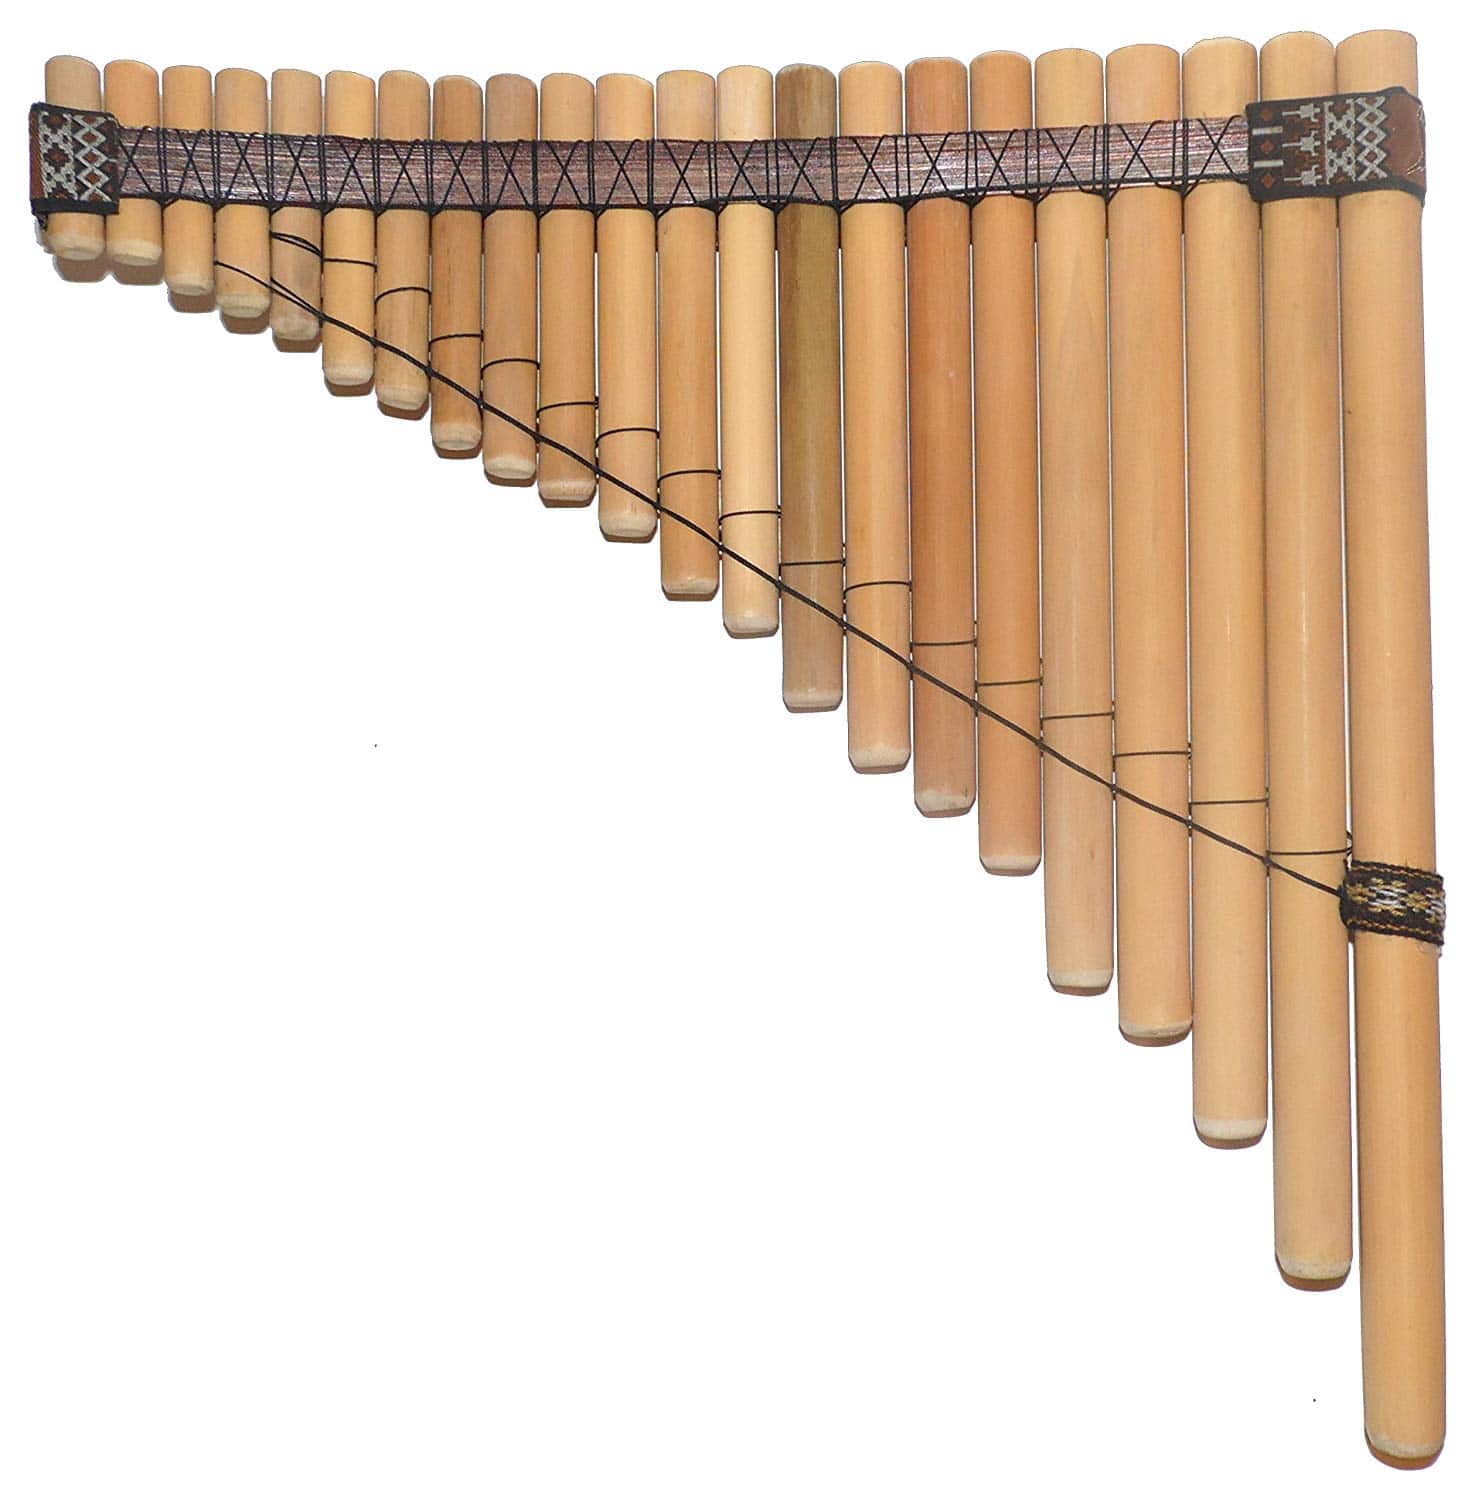 Музыкальный инструмент пана. Панфлейта, «флейта пана». Кугиклы ( кувиклы, кувички. Кугиклы духовой музыкальный инструмент. Русские народные инструменты кугиклы.